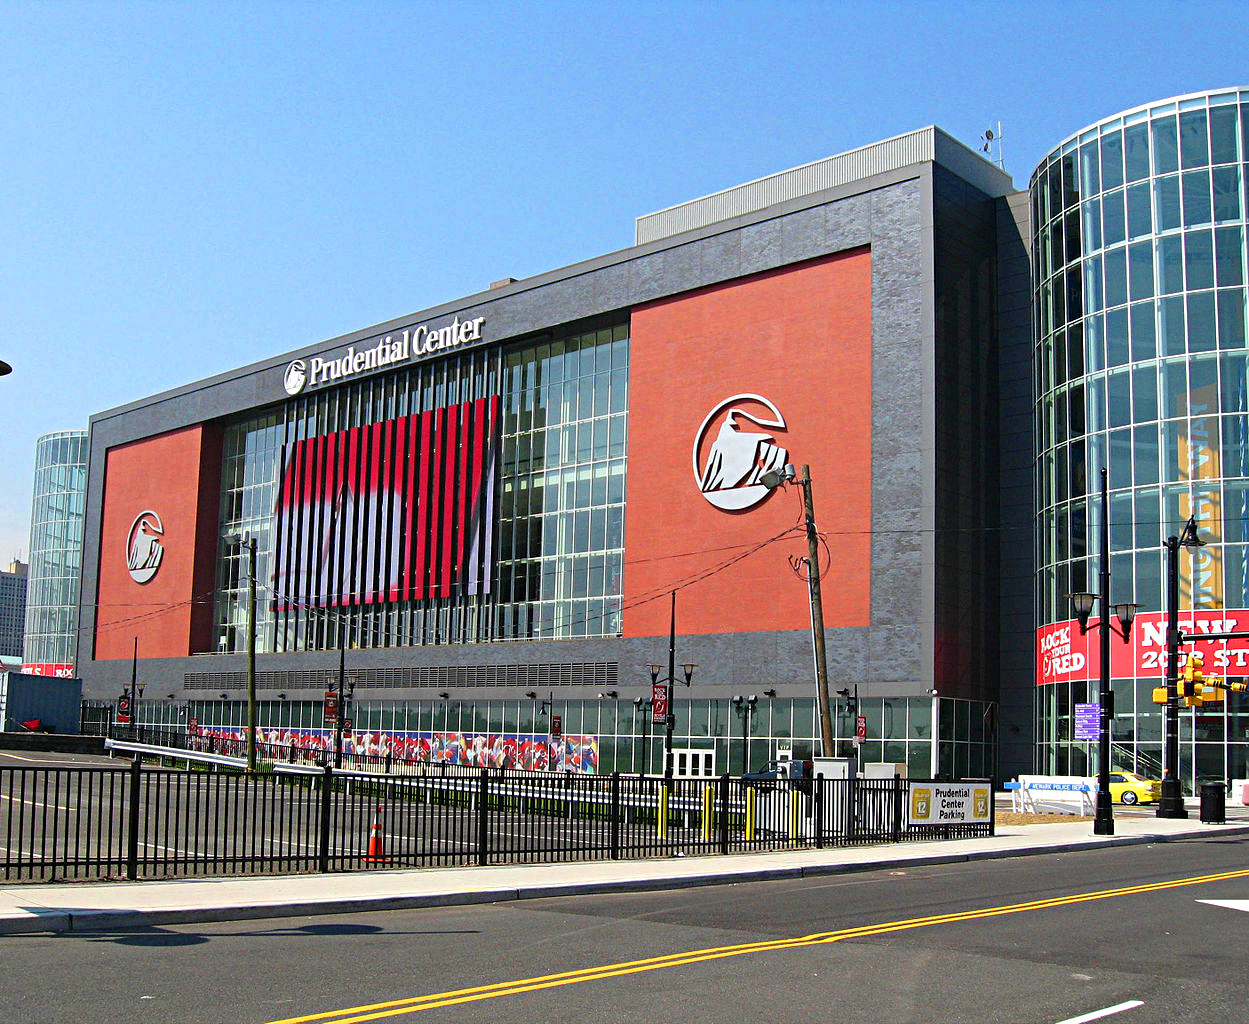 NJ Devils: Prudential Center food, concession, parking info